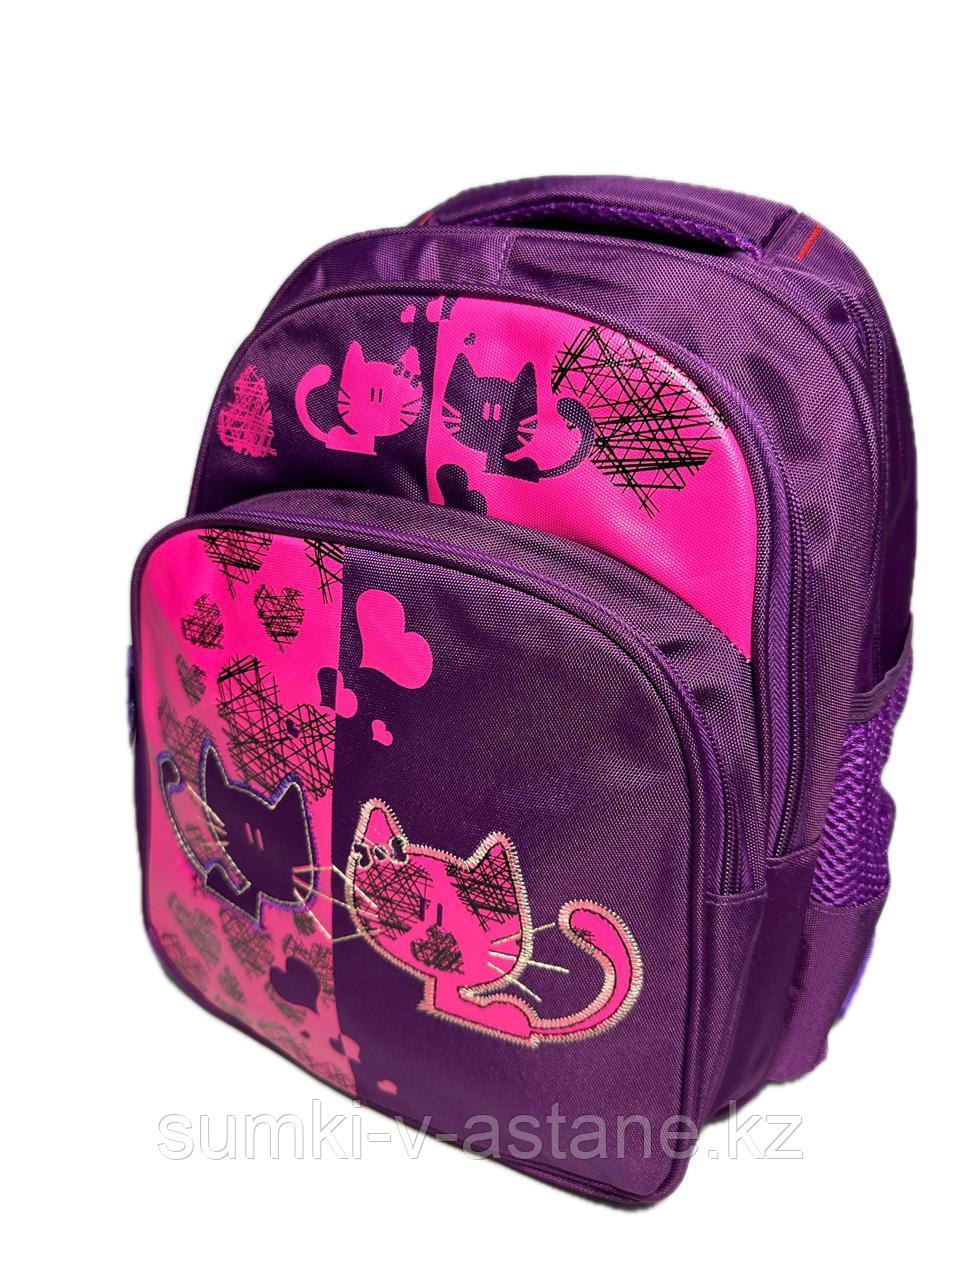 Школьный рюкзак для девочек в начальные классы "Miqiney". Высота 36 см, ширина 27 см, глубина 17 см.